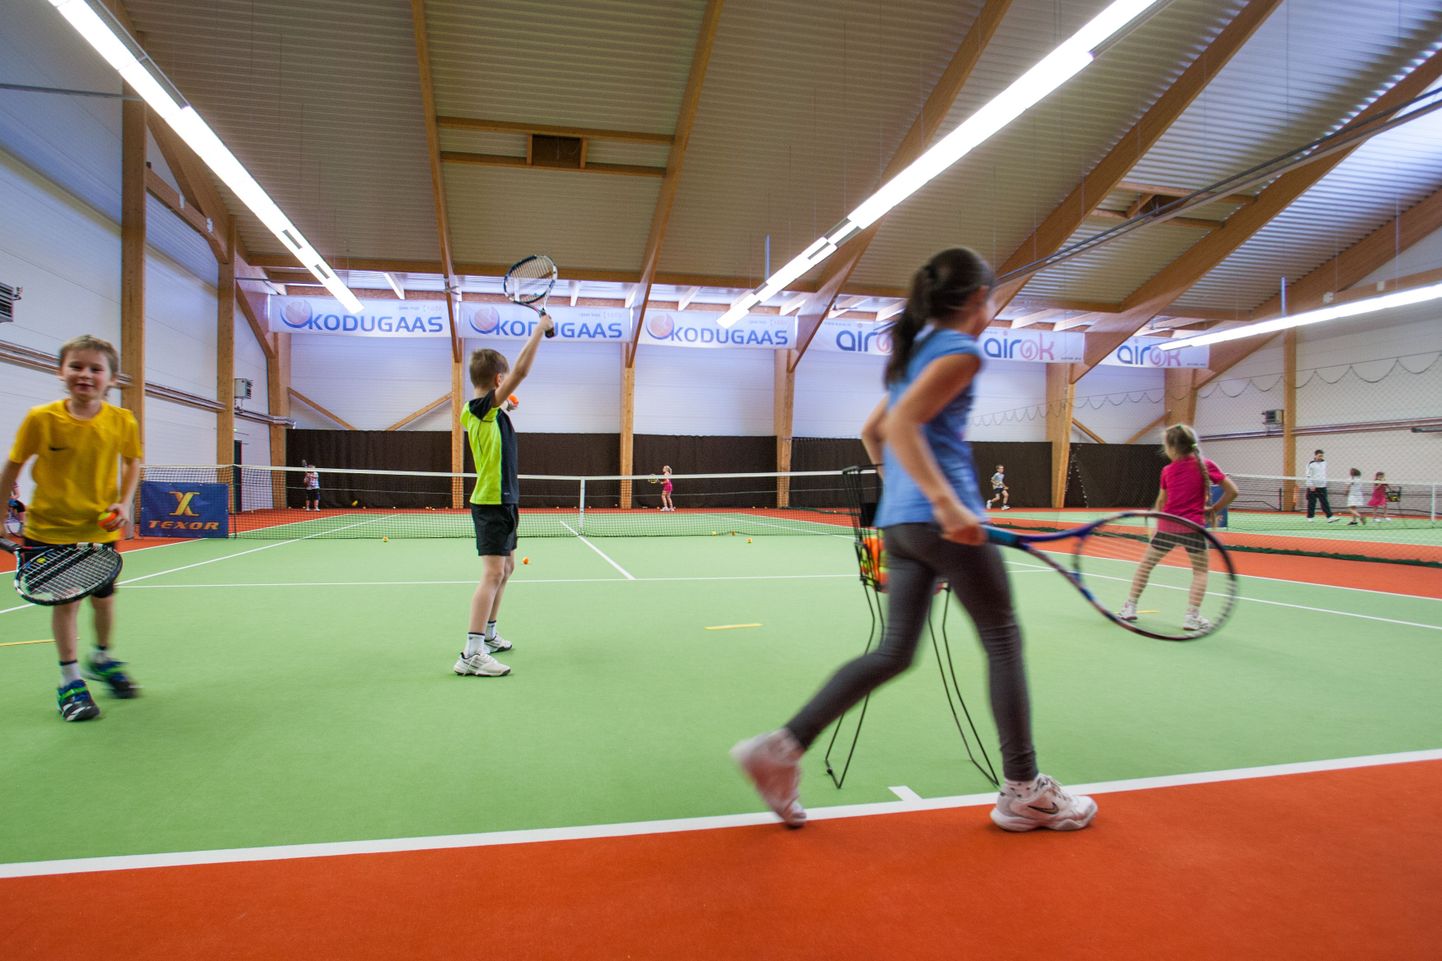 Tallinna külje all, Harku vallas asuvasse Tabasallu peaks selle aasta lõpuks kerkima 1,6 miljonit eurot maksev tennikeskus.